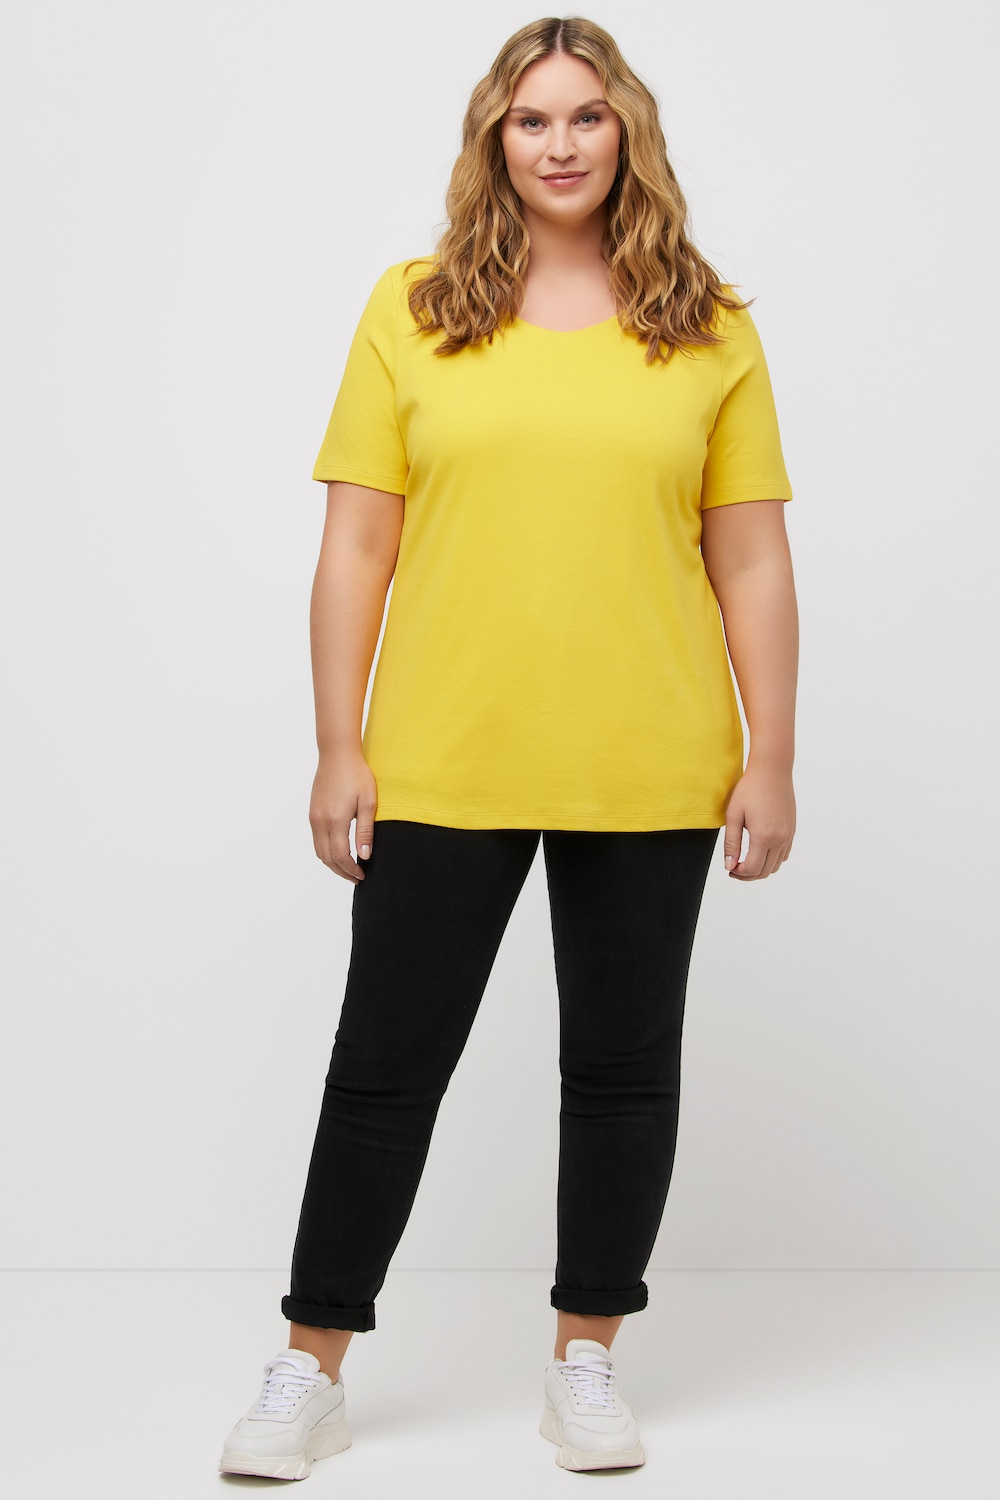 Große Größen Shirt, Damen, gelb, Größe: 54/56, Baumwolle, Ulla Popken